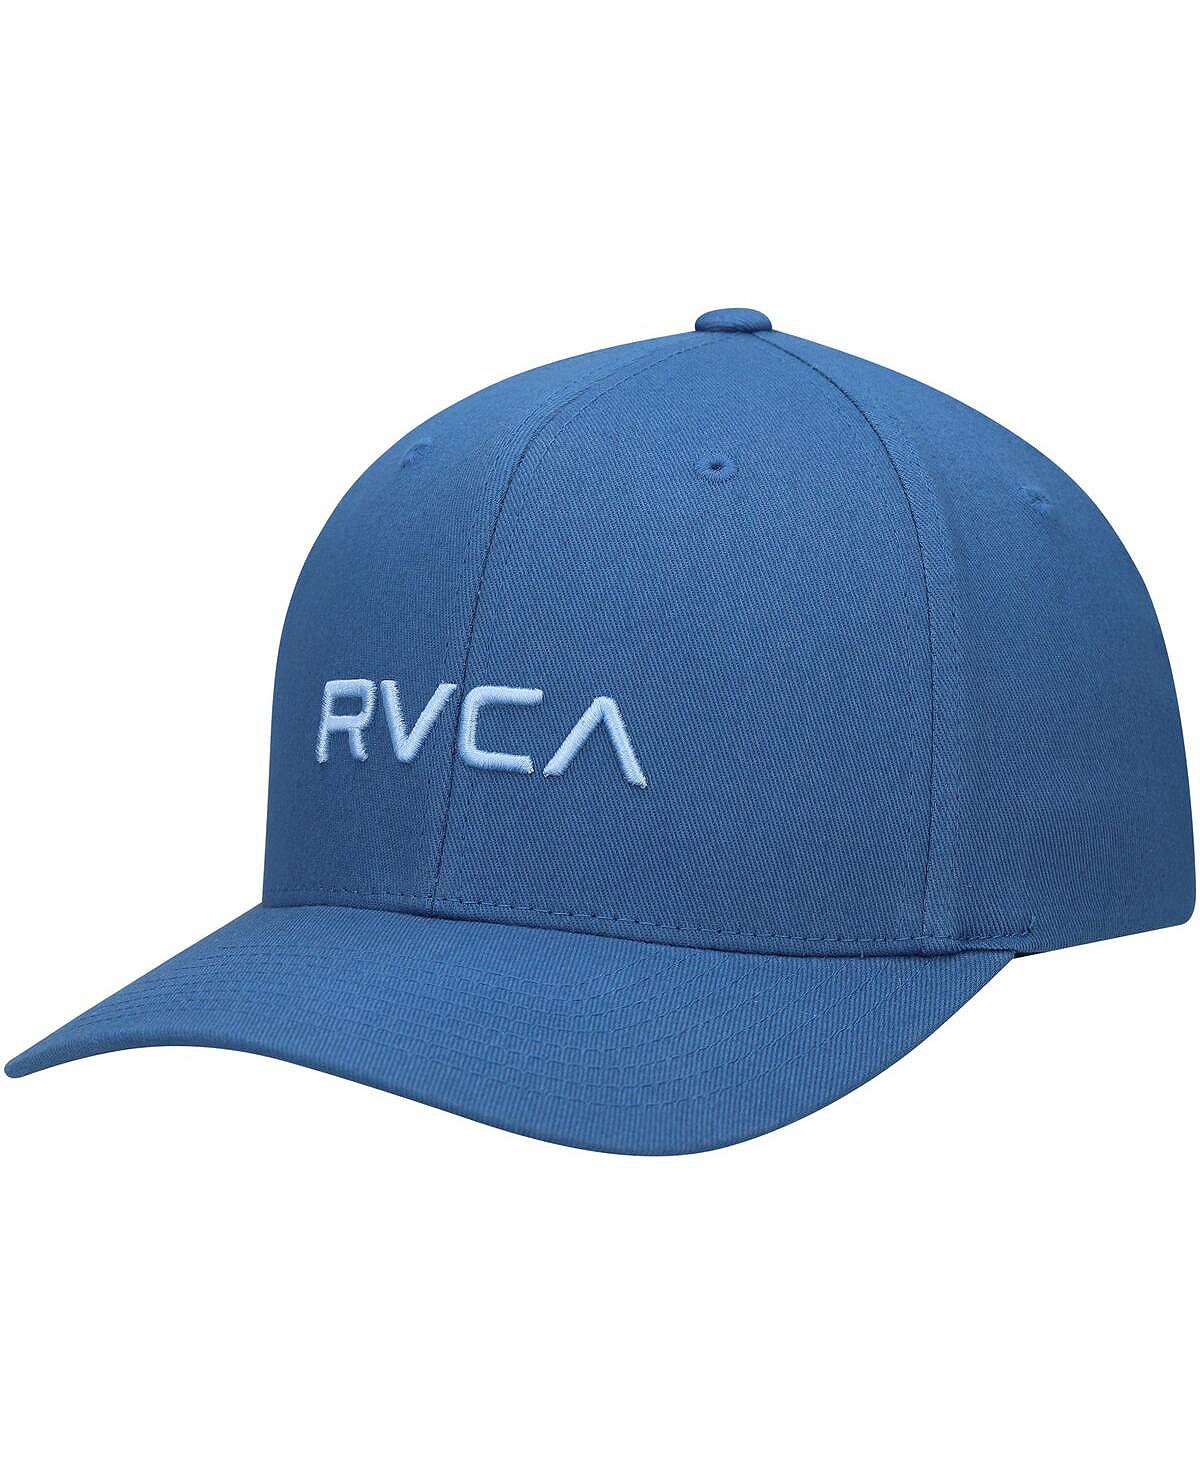 Мужская синяя шляпа с логотипом RVCA цена и фото